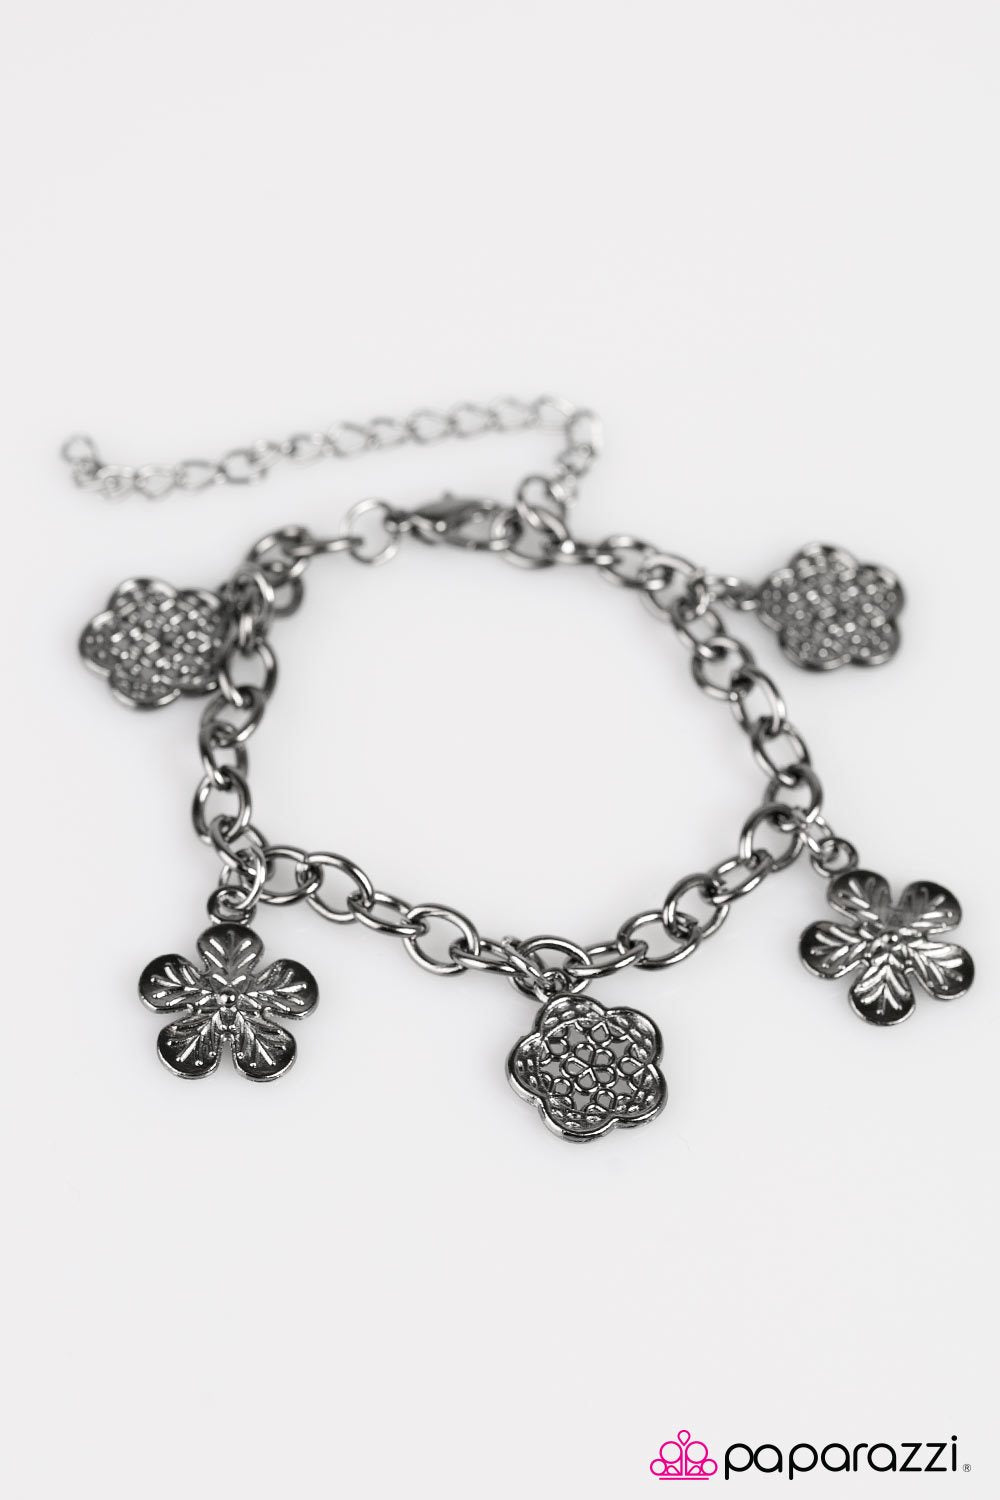 Season of Flowers Gunmetal Black Flower Charm Bracelet - Paparazzi Accessories-CarasShop.com - $5 Jewelry by Cara Jewels